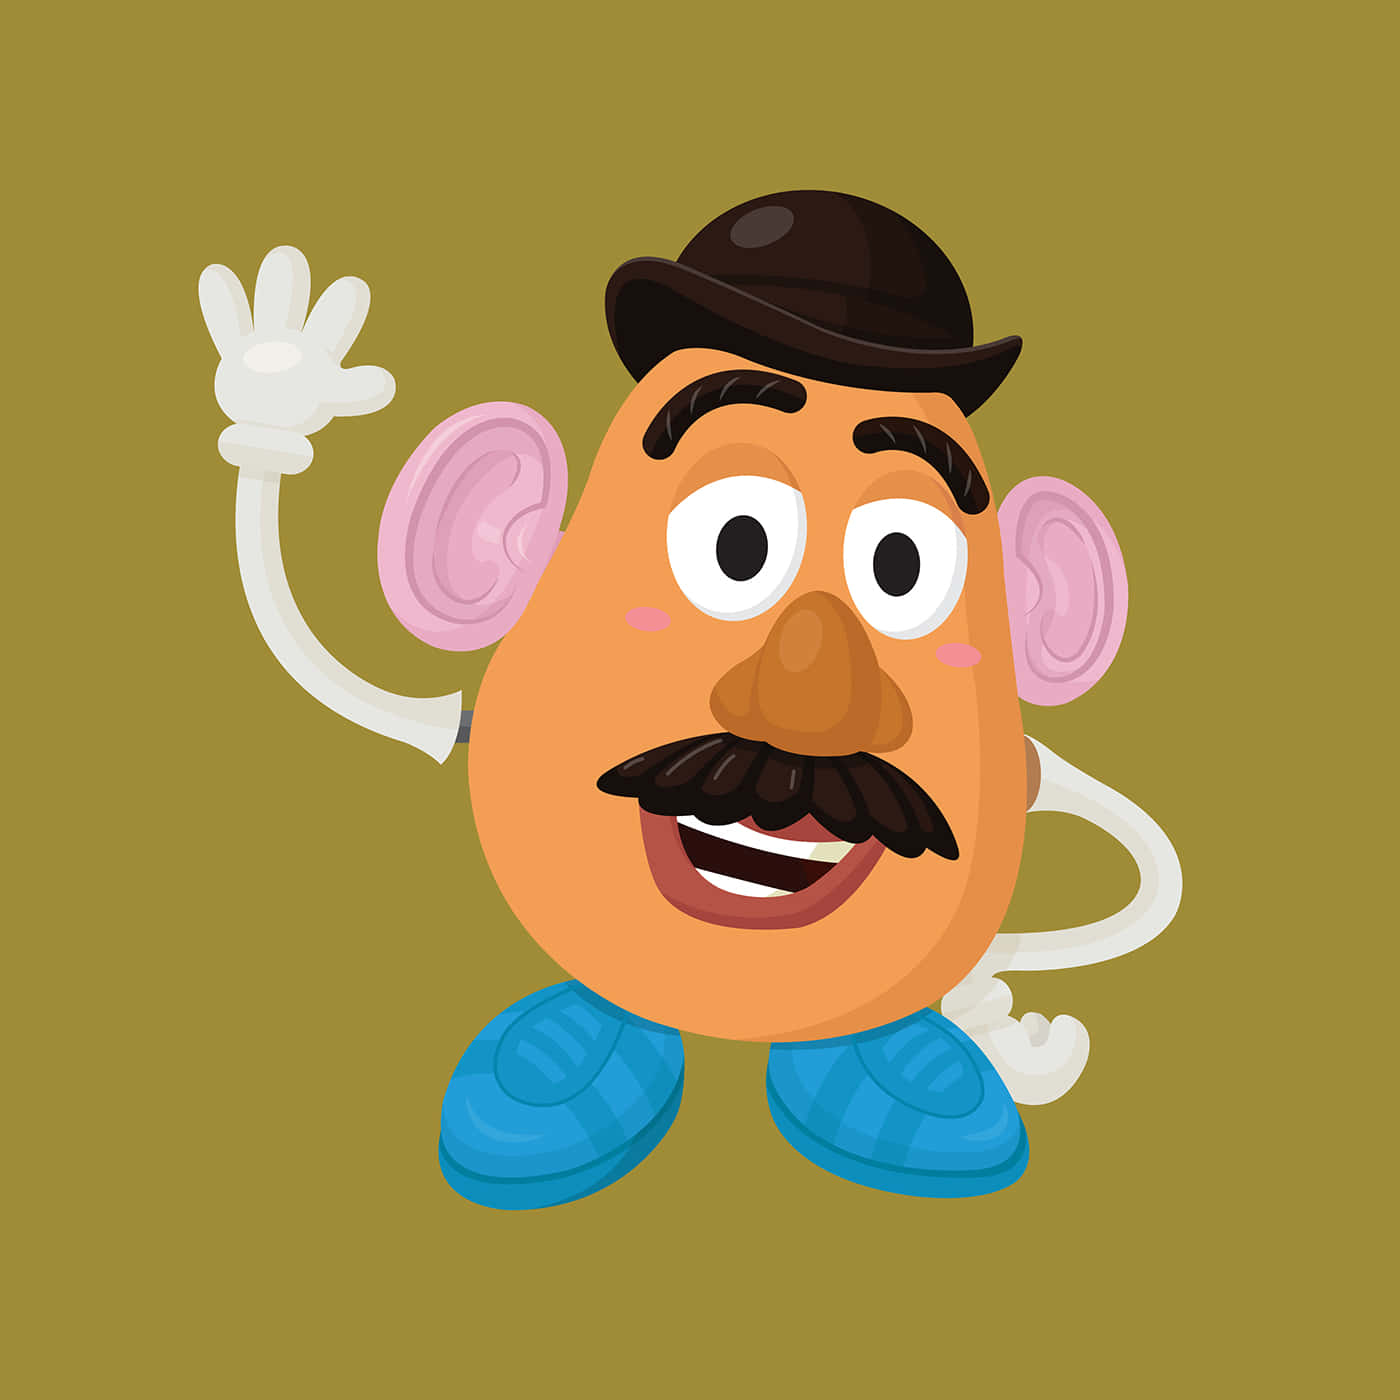 Cartoon Mr. Potato Head Picture